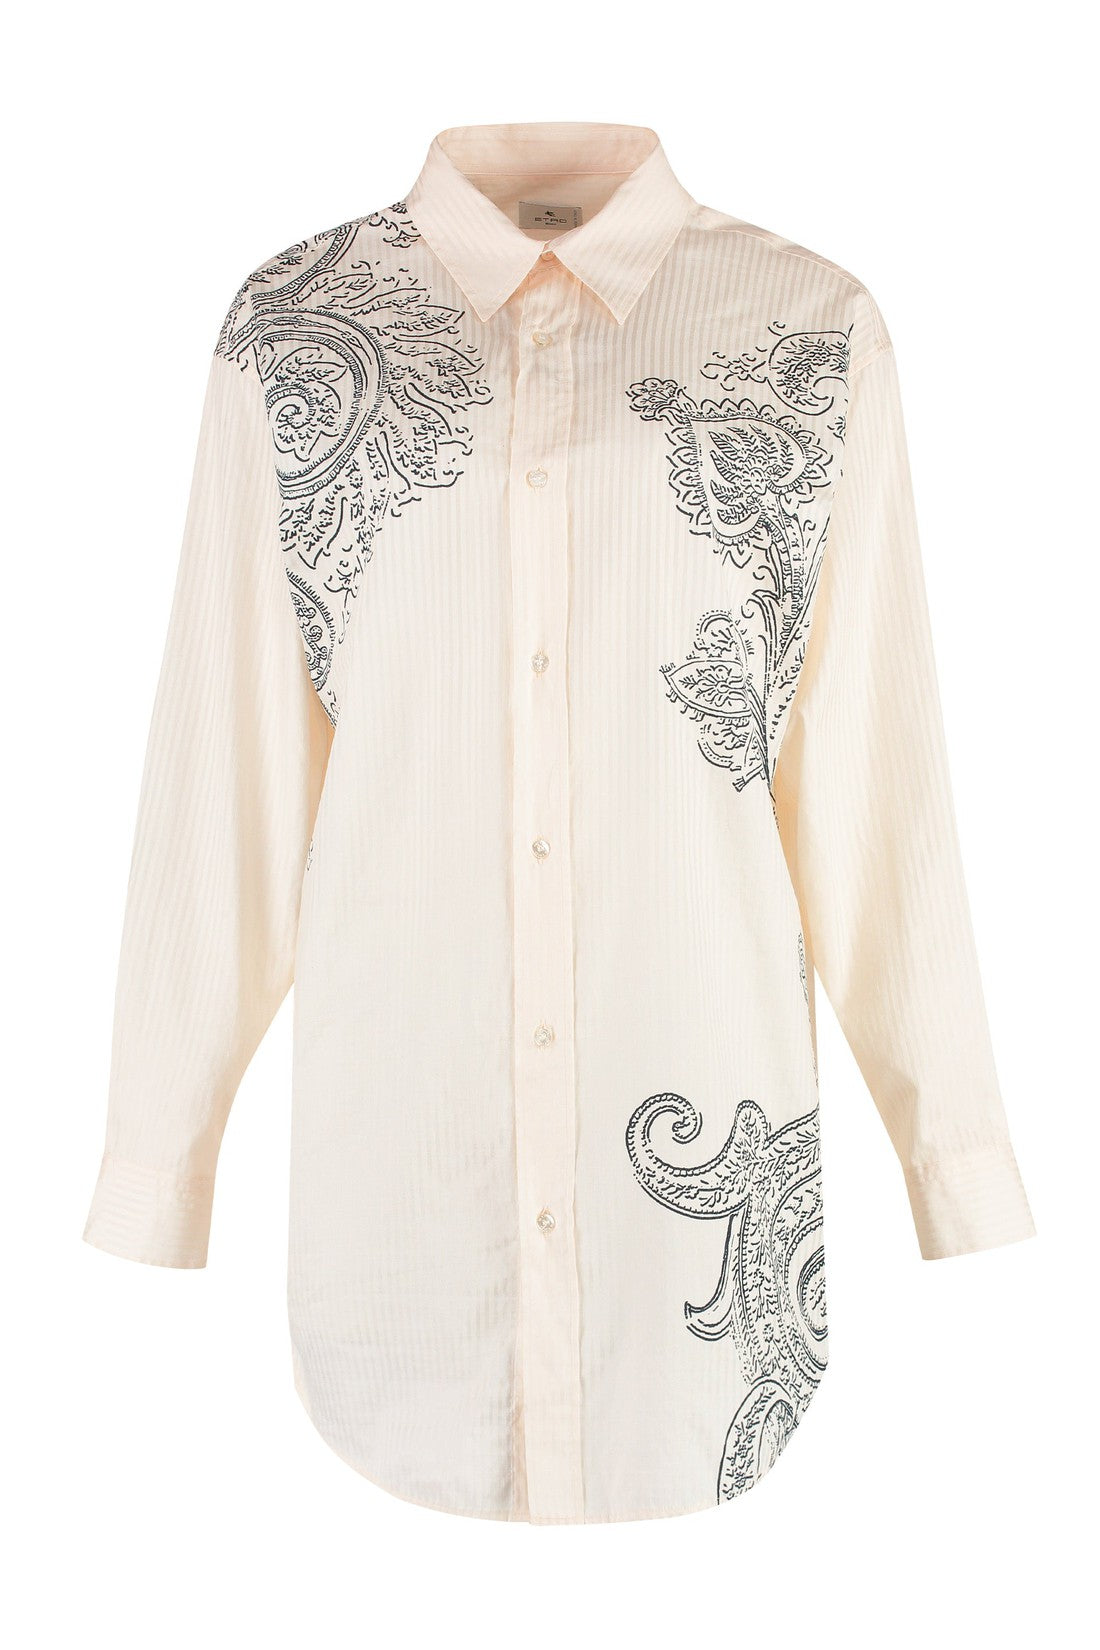 Etro-OUTLET-SALE-Silk-cotton blend shirt-ARCHIVIST